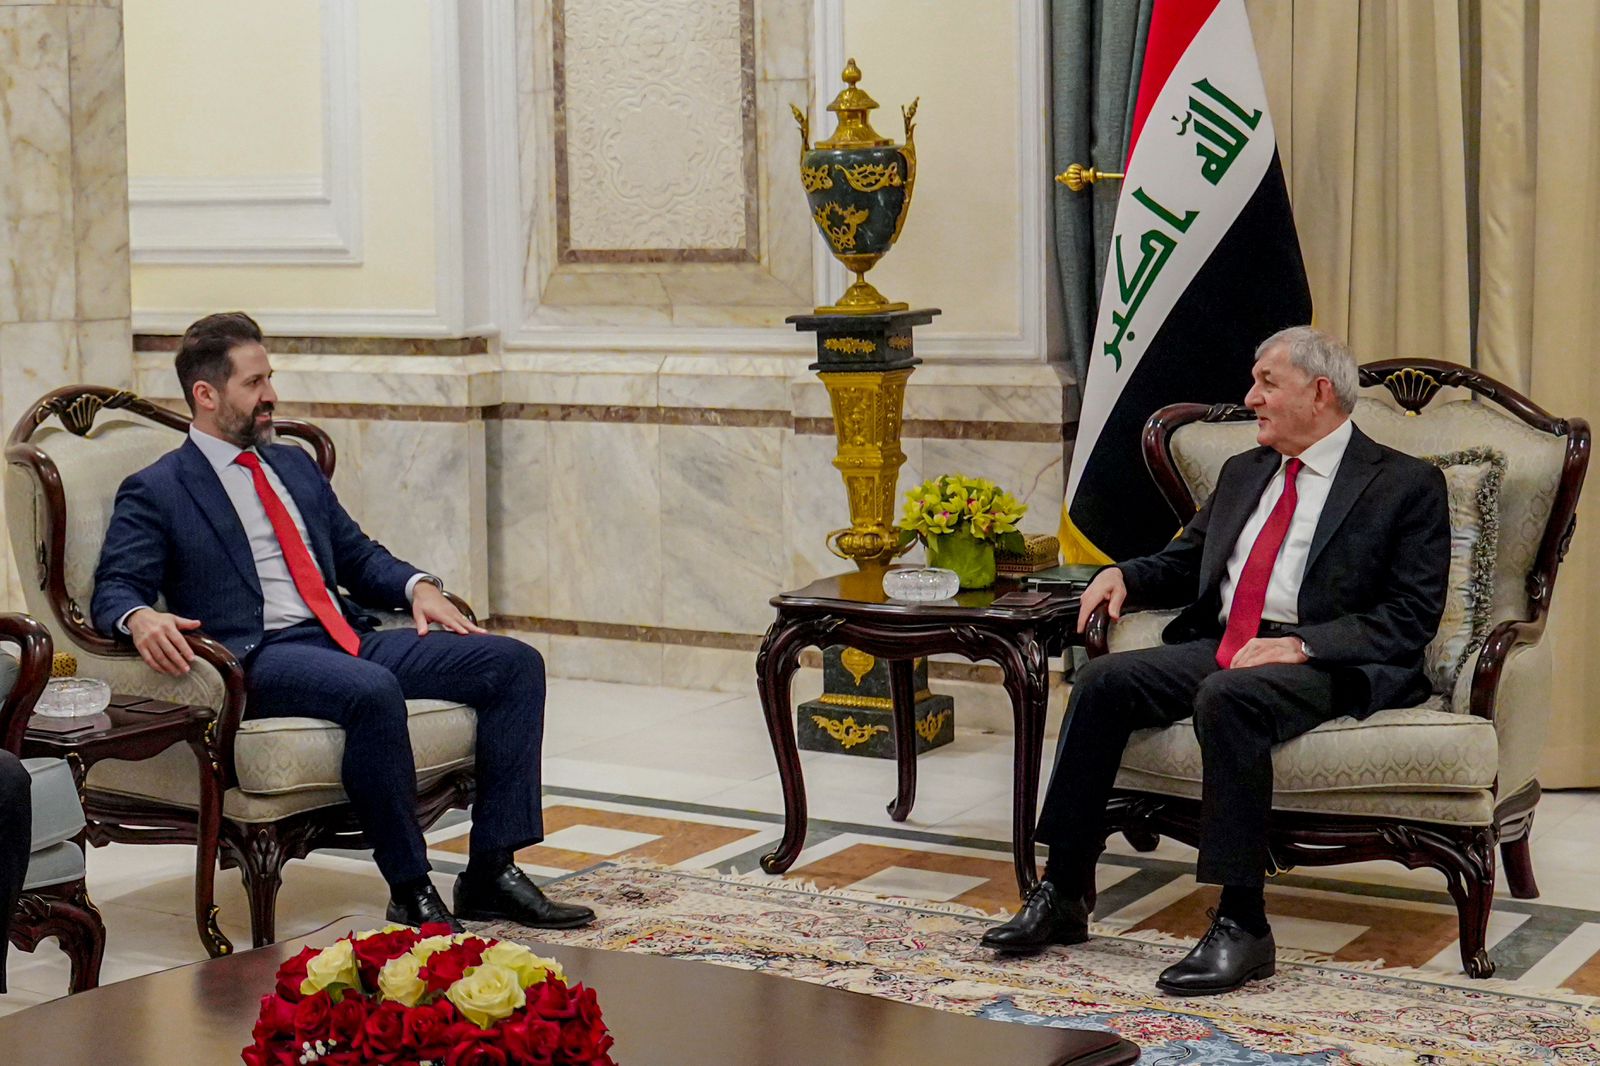 الرئيس العراقي يدعو لحوار "حاسم" للمسائل العالقة بين بغداد وكوردستان